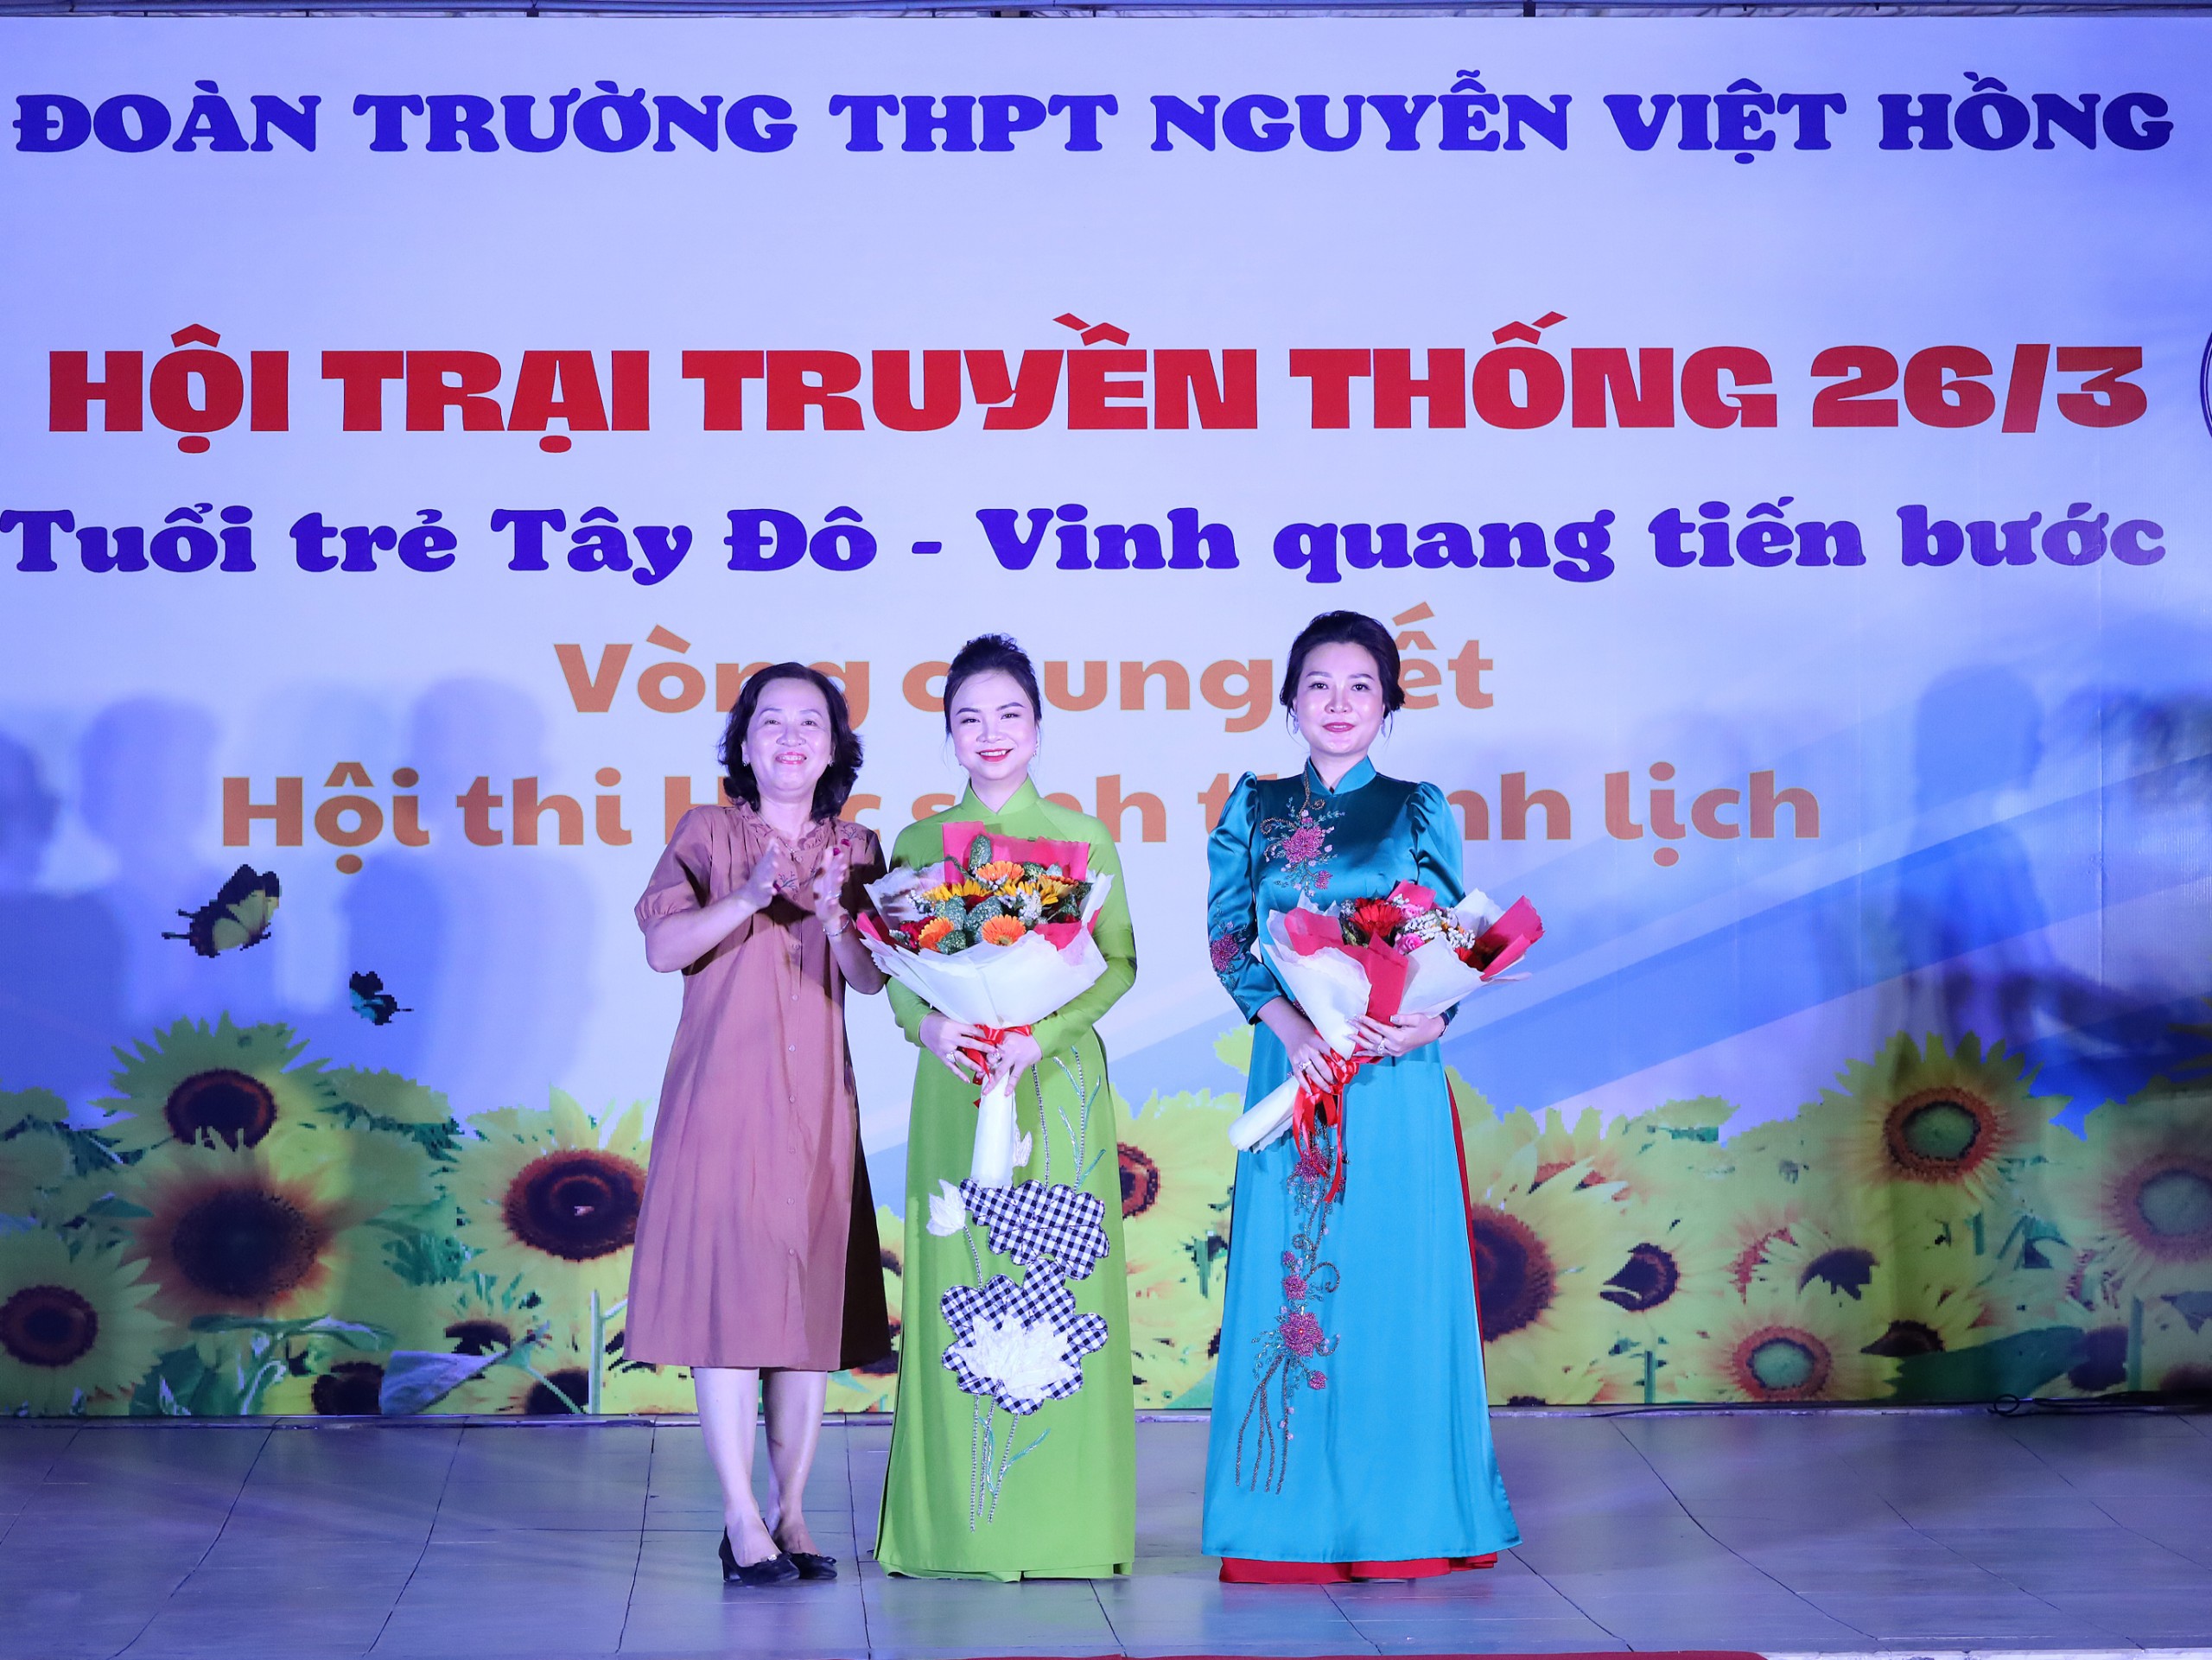 Cô Trần Thị Lụa - Hiệu trưởng Trường THPT Nguyễn Việt Hồng tặng hoa cho đơn vị tài trợ.